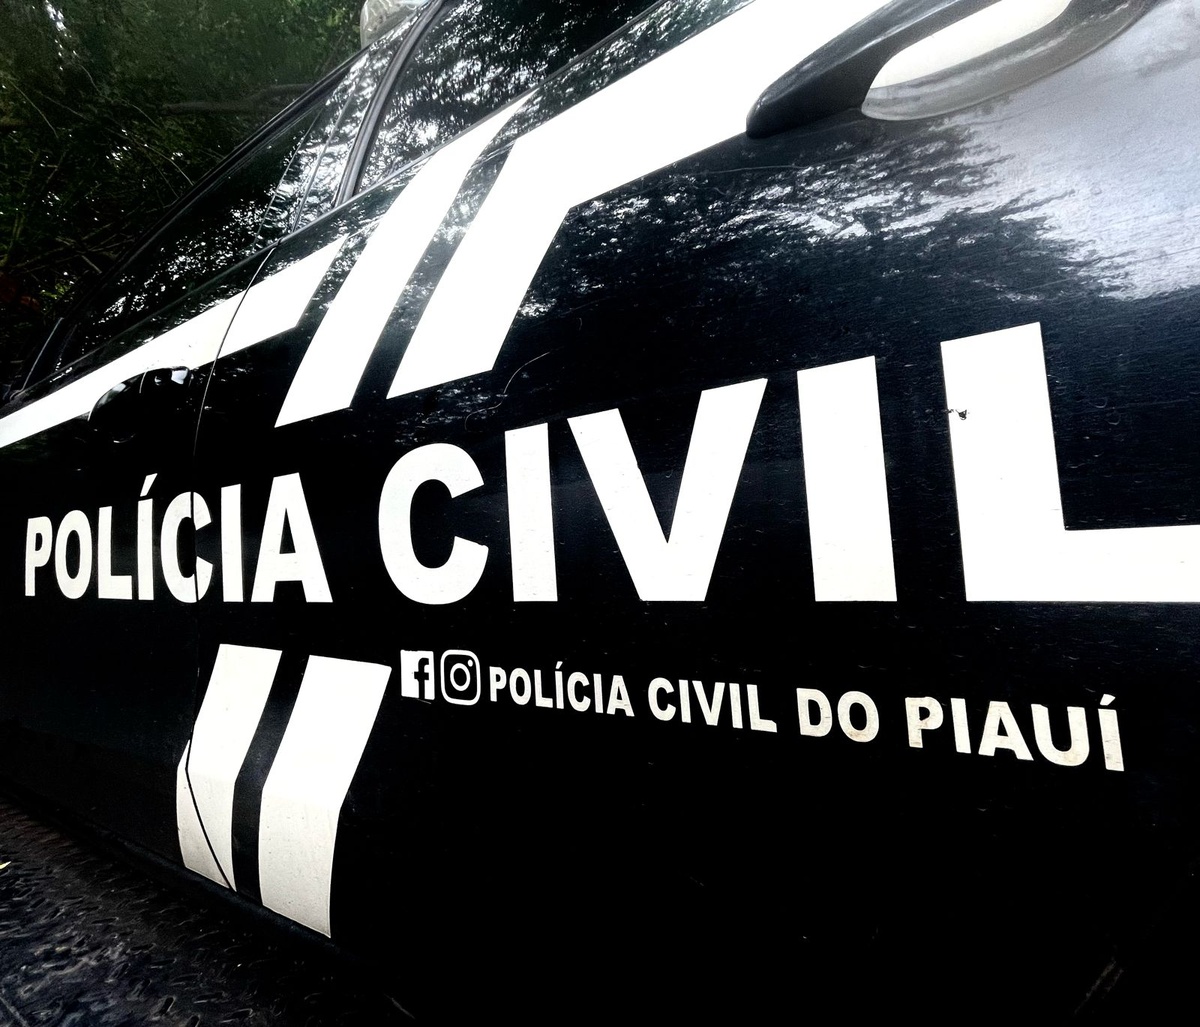 Polícia Civil do Piauí.